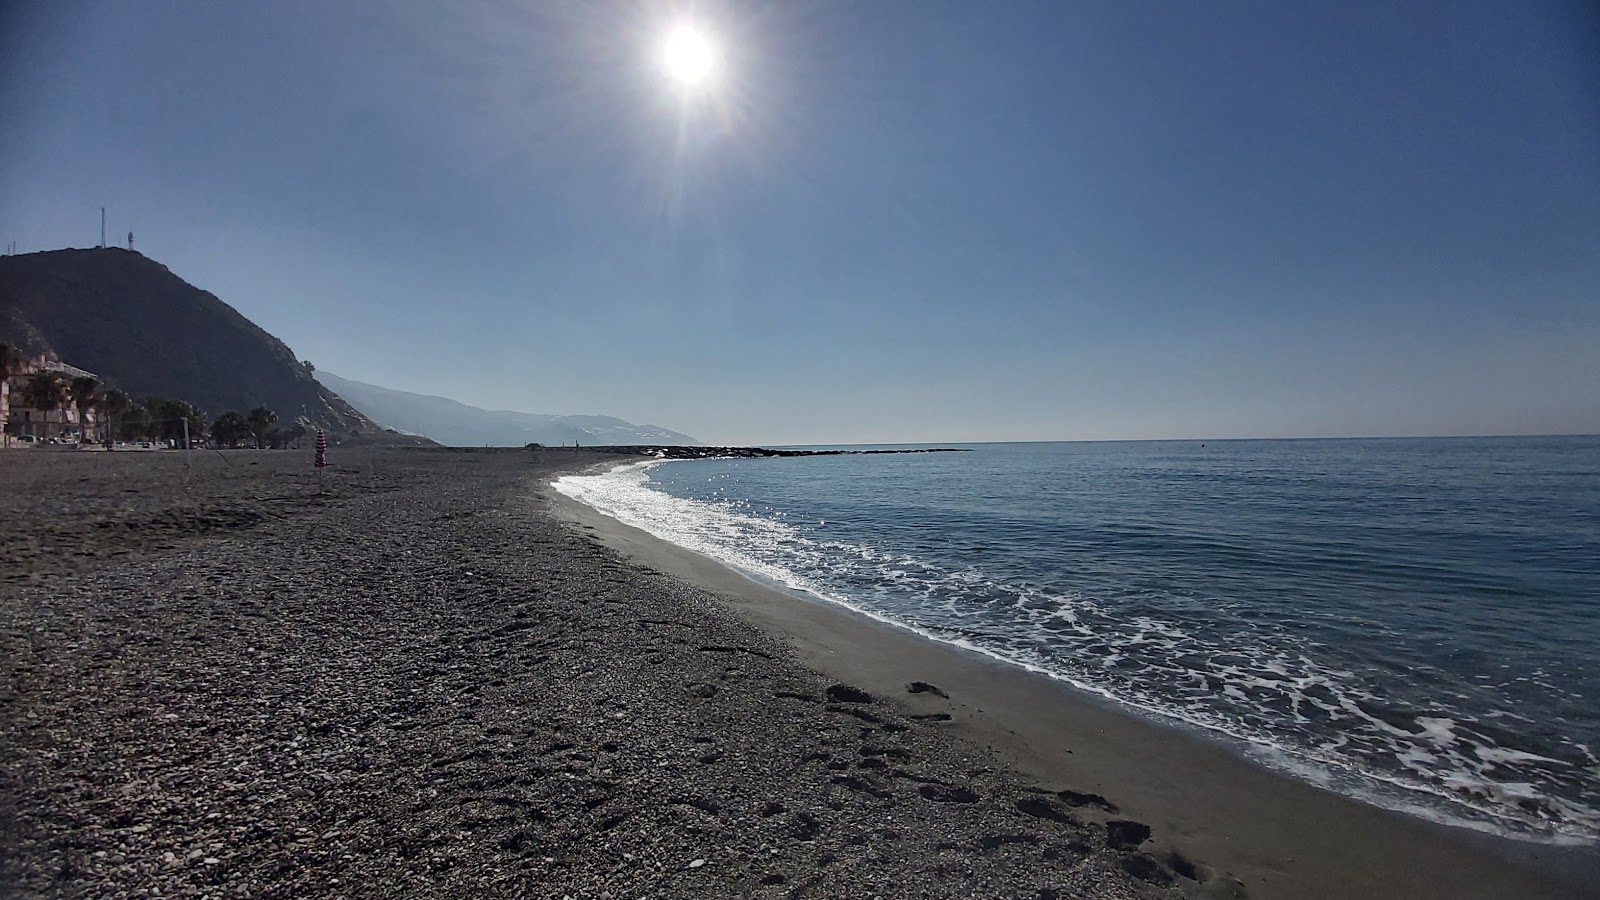 Fotografie cu La MamoLa beach - locul popular printre cunoscătorii de relaxare